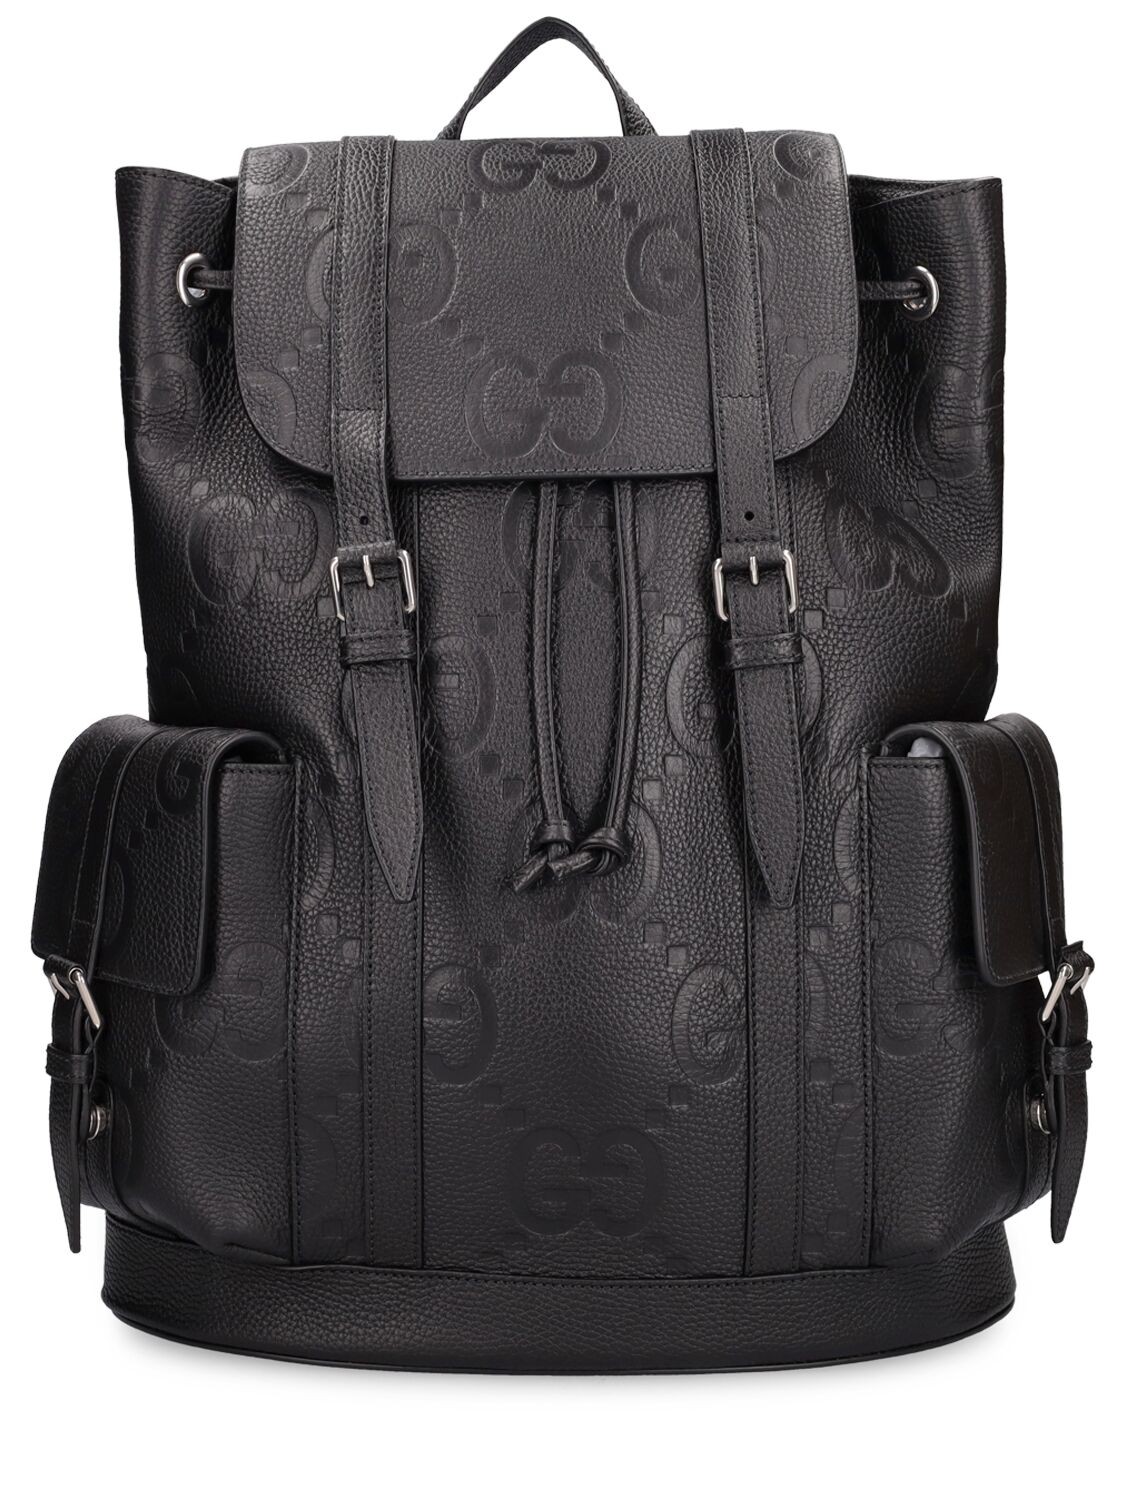 Image of Jumbo Gg Leather Backpack